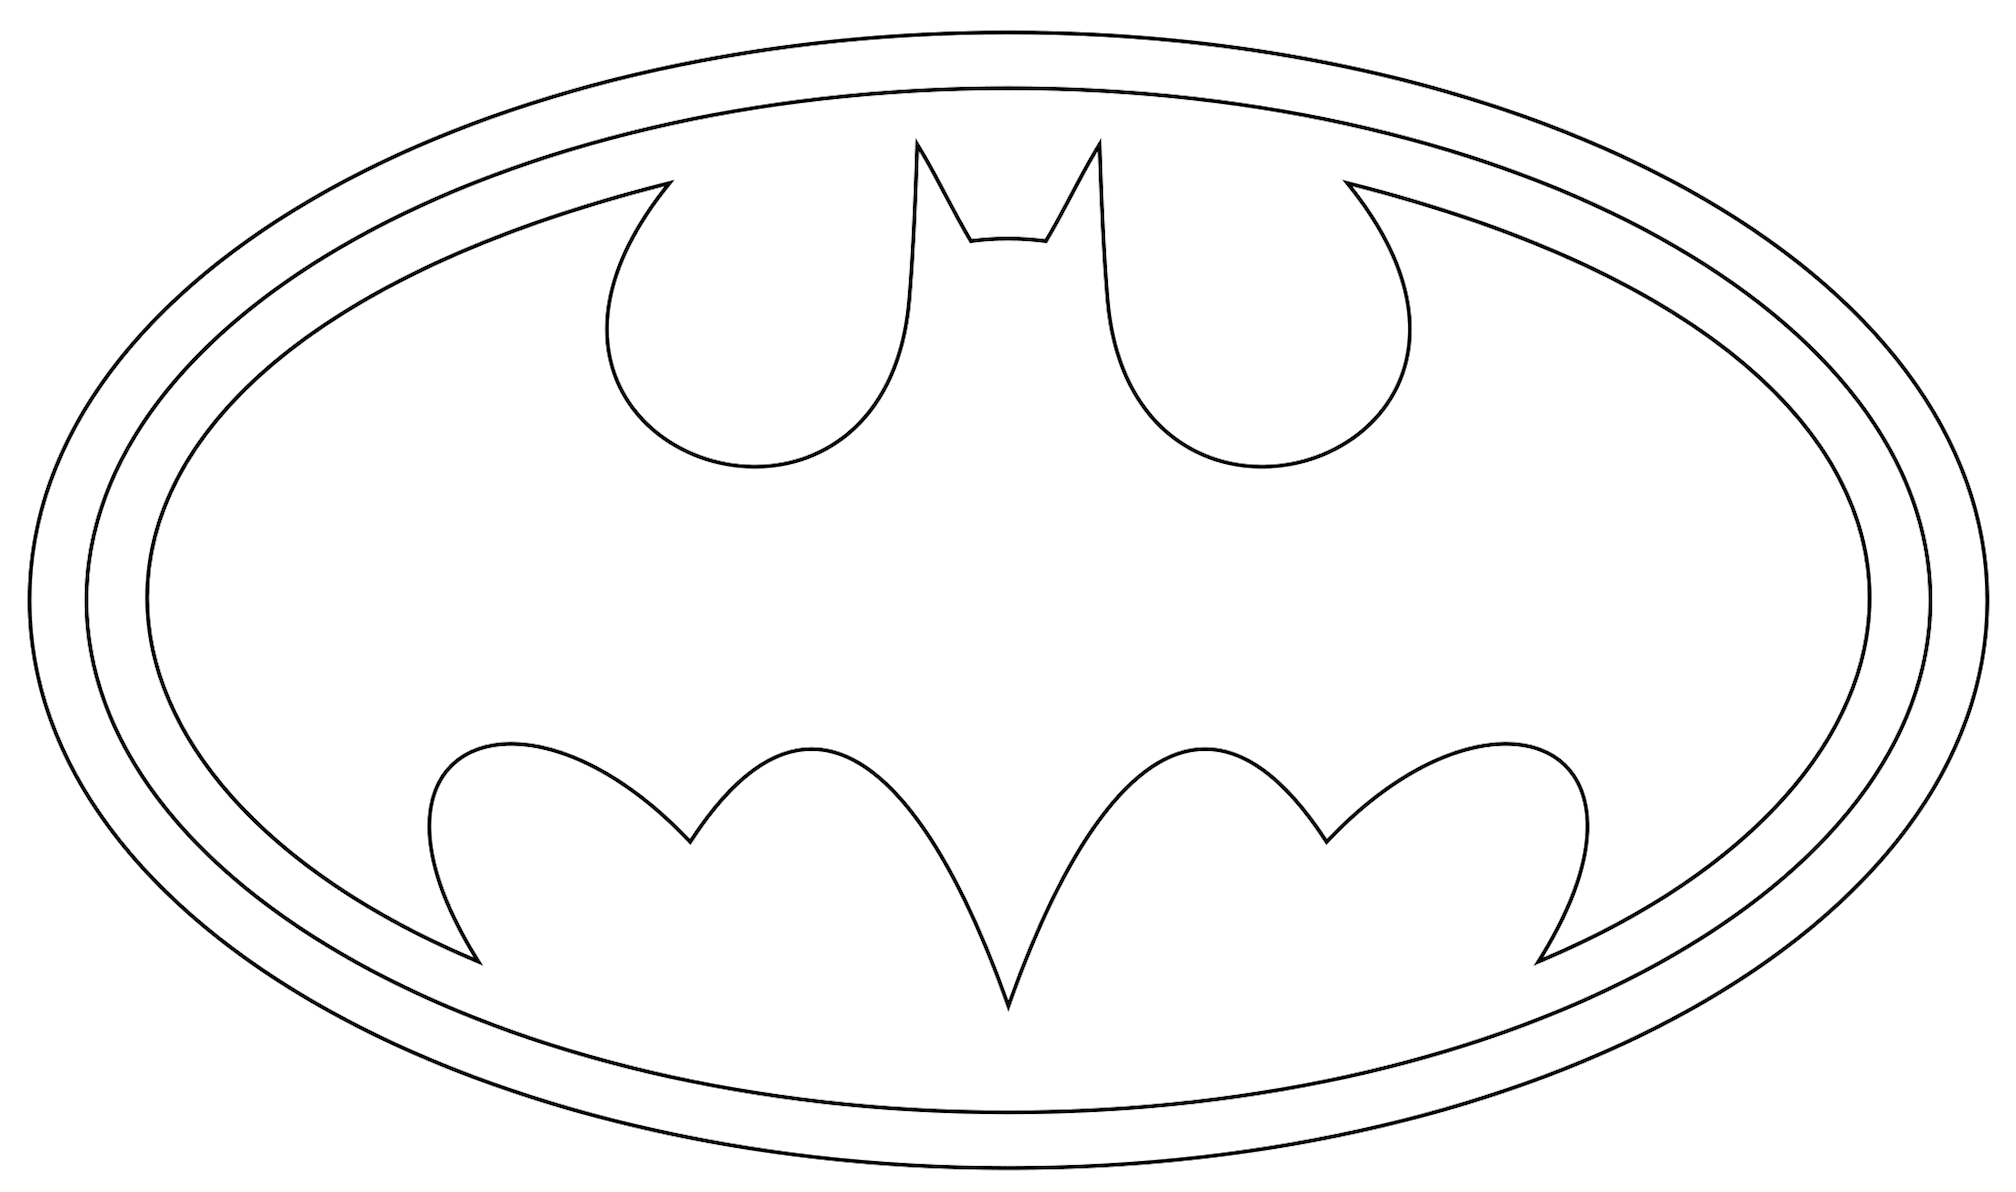 Baixe agora mesmo 10 desenhos e imagens do Batman pra colorir do seu jeito e fazer uma arte épica com o cavaleiro das trevas.